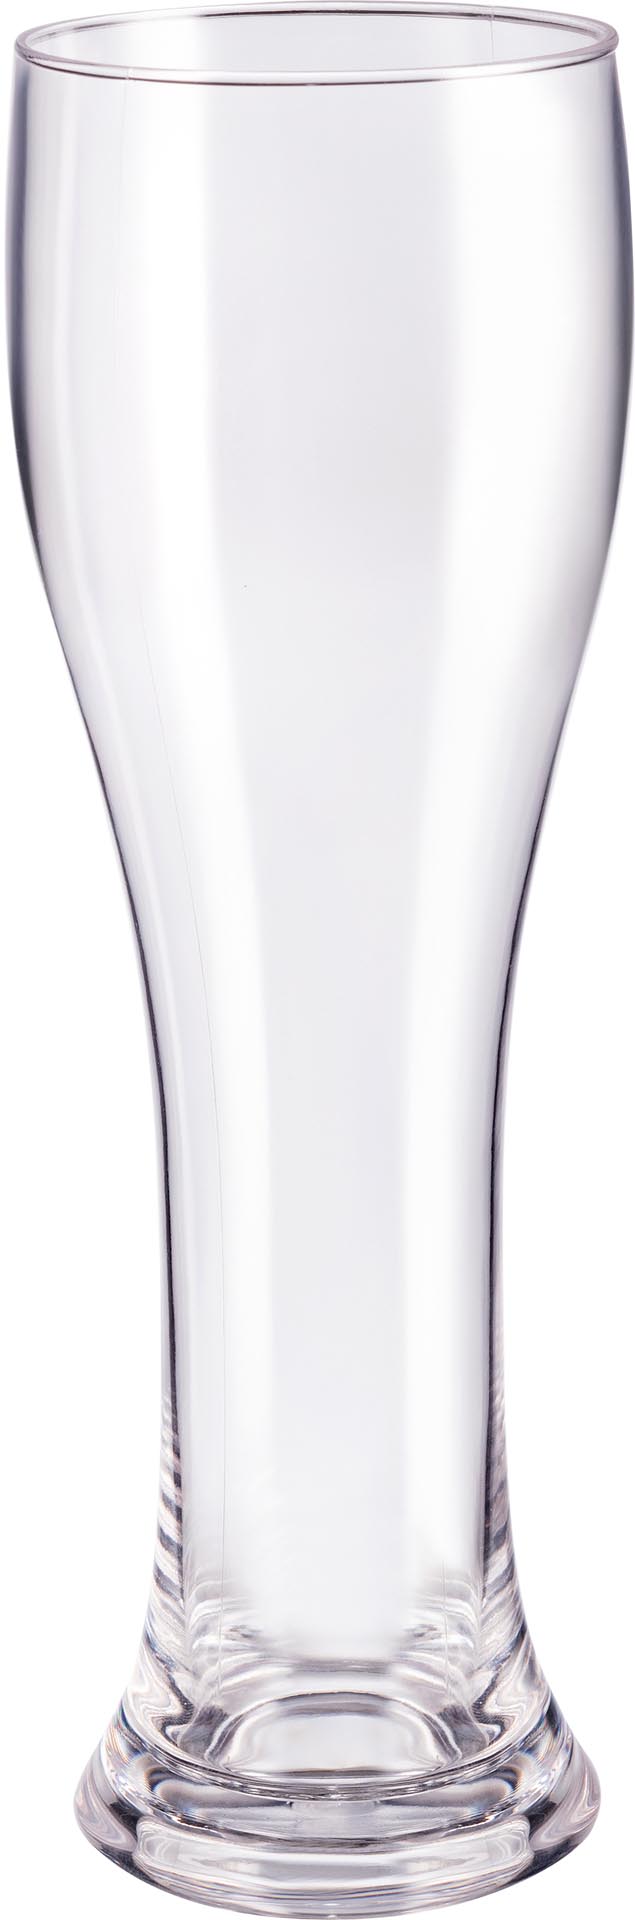 Glasserie Polycarbonat Weizenbierglas, S.280